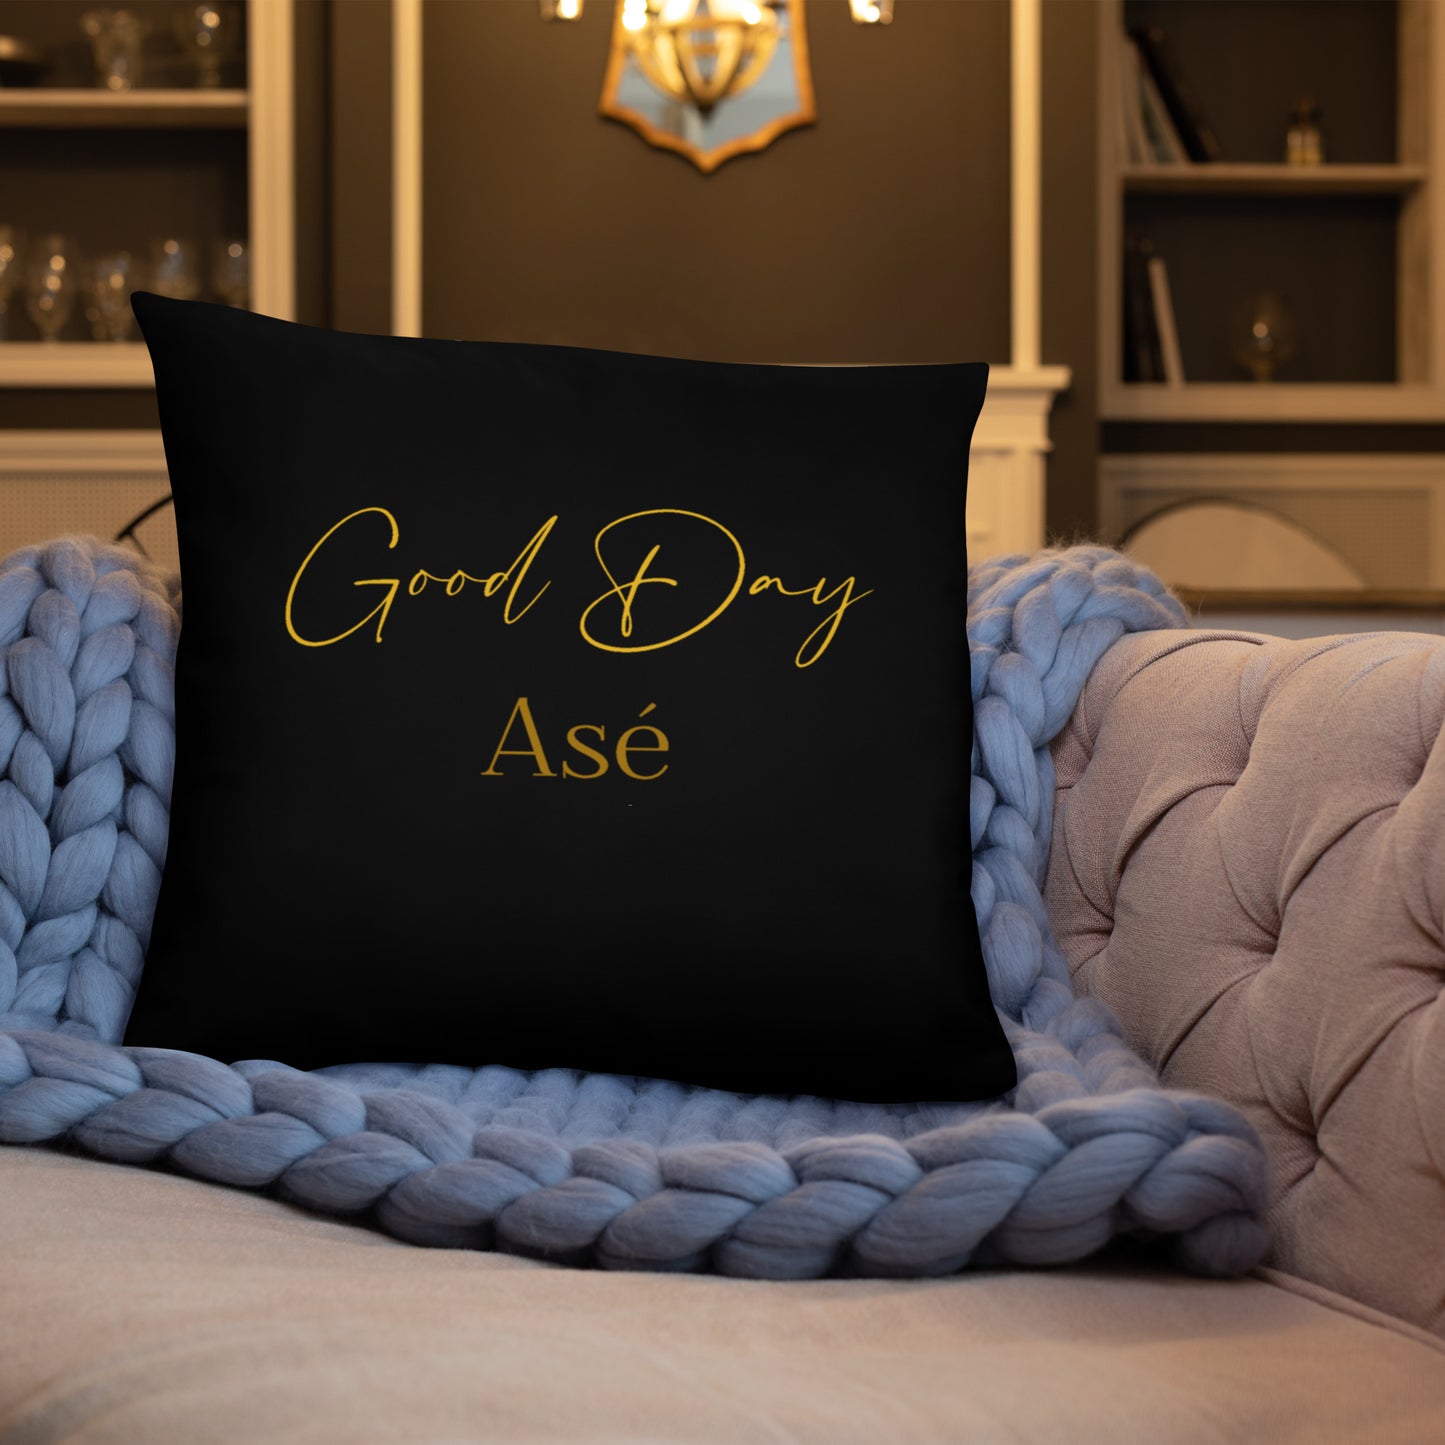 Good day, Asé pillow